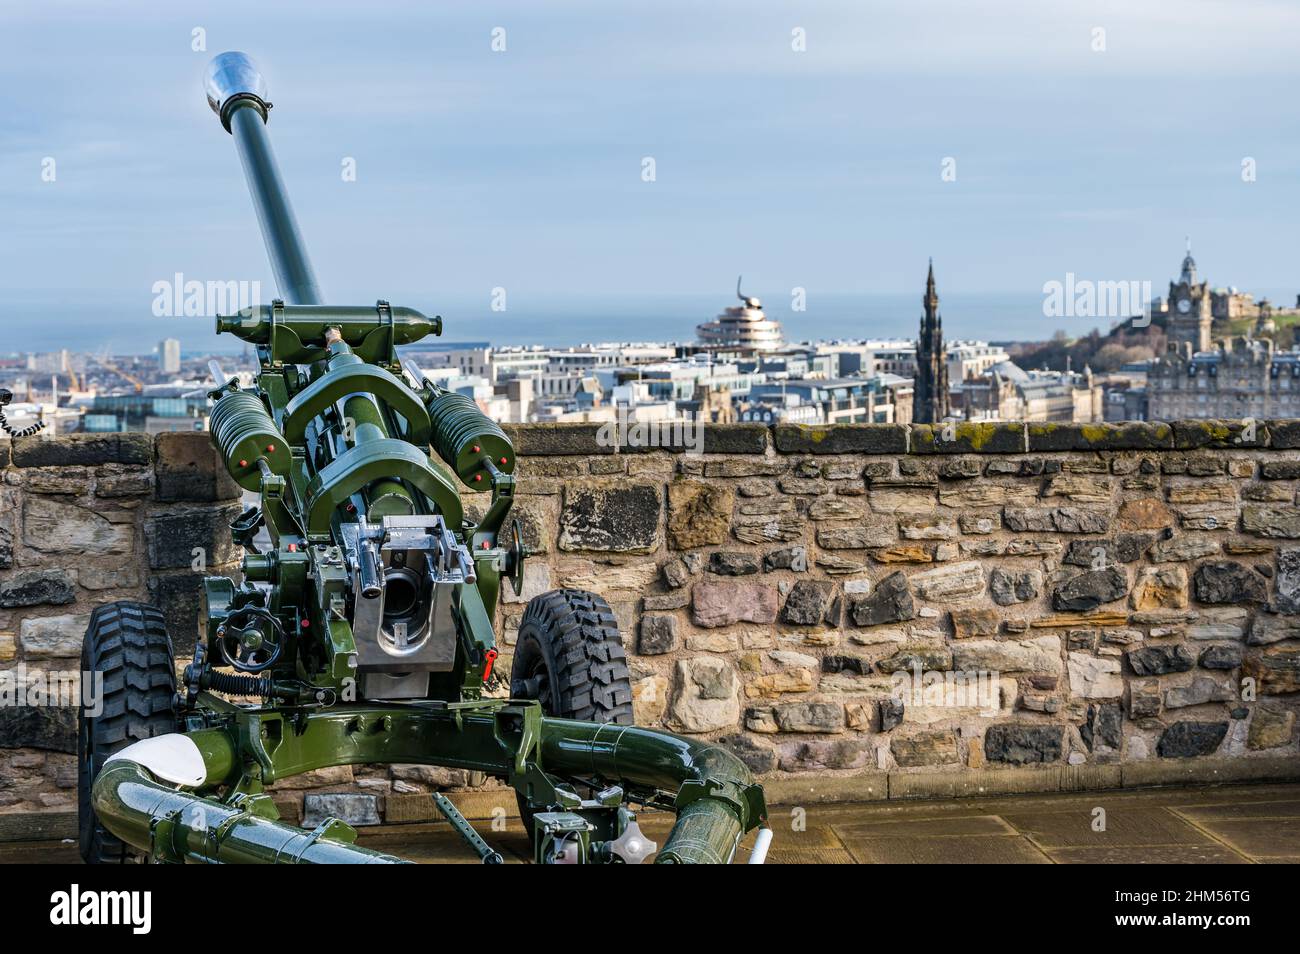 L118 Leichtes Artillerieselgewehr am Mills Mount auf der Burgmauer von Edinburgh Castle mit Blick auf das Stadtzentrum, Schottland, Großbritannien Stockfoto